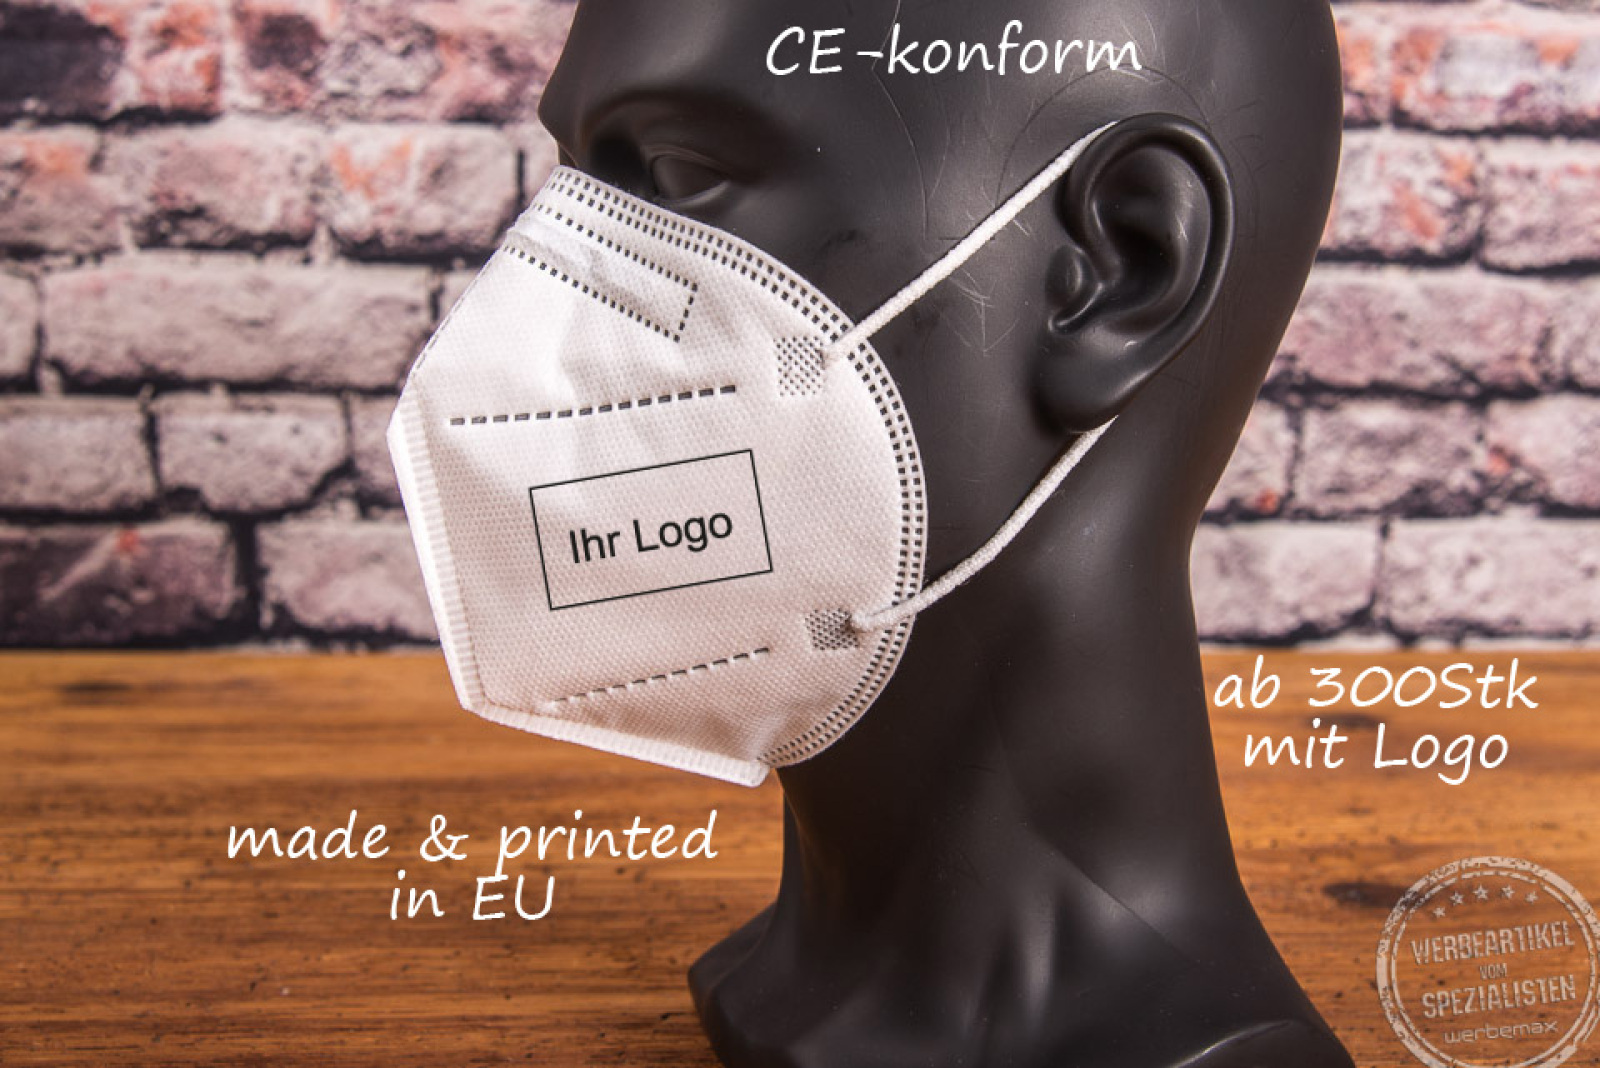 ffp2 masken CE-konform mit logo